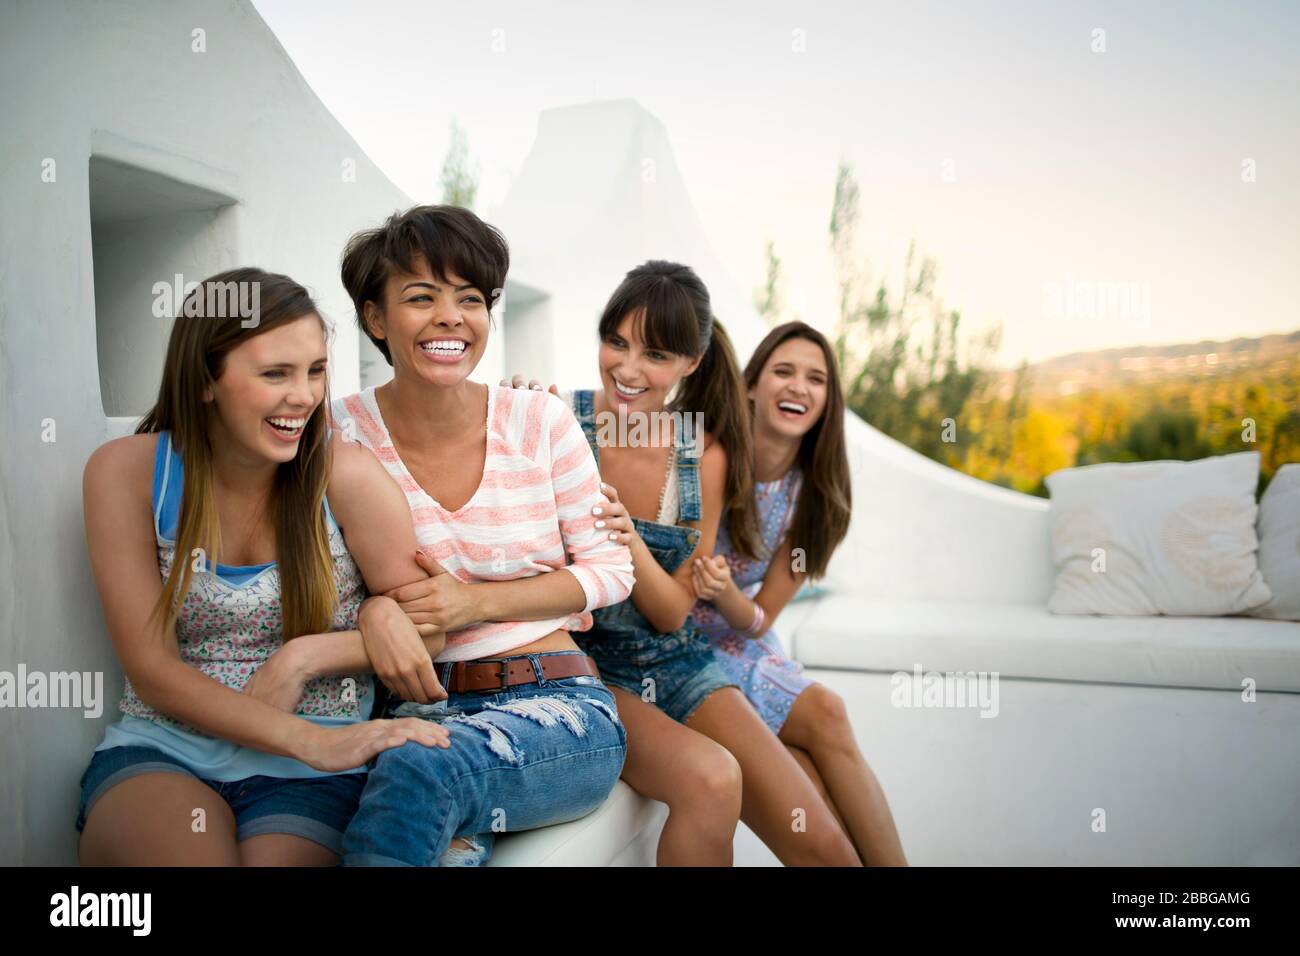 Cuatro amigos sonrientes sentados en un balcón Foto de stock